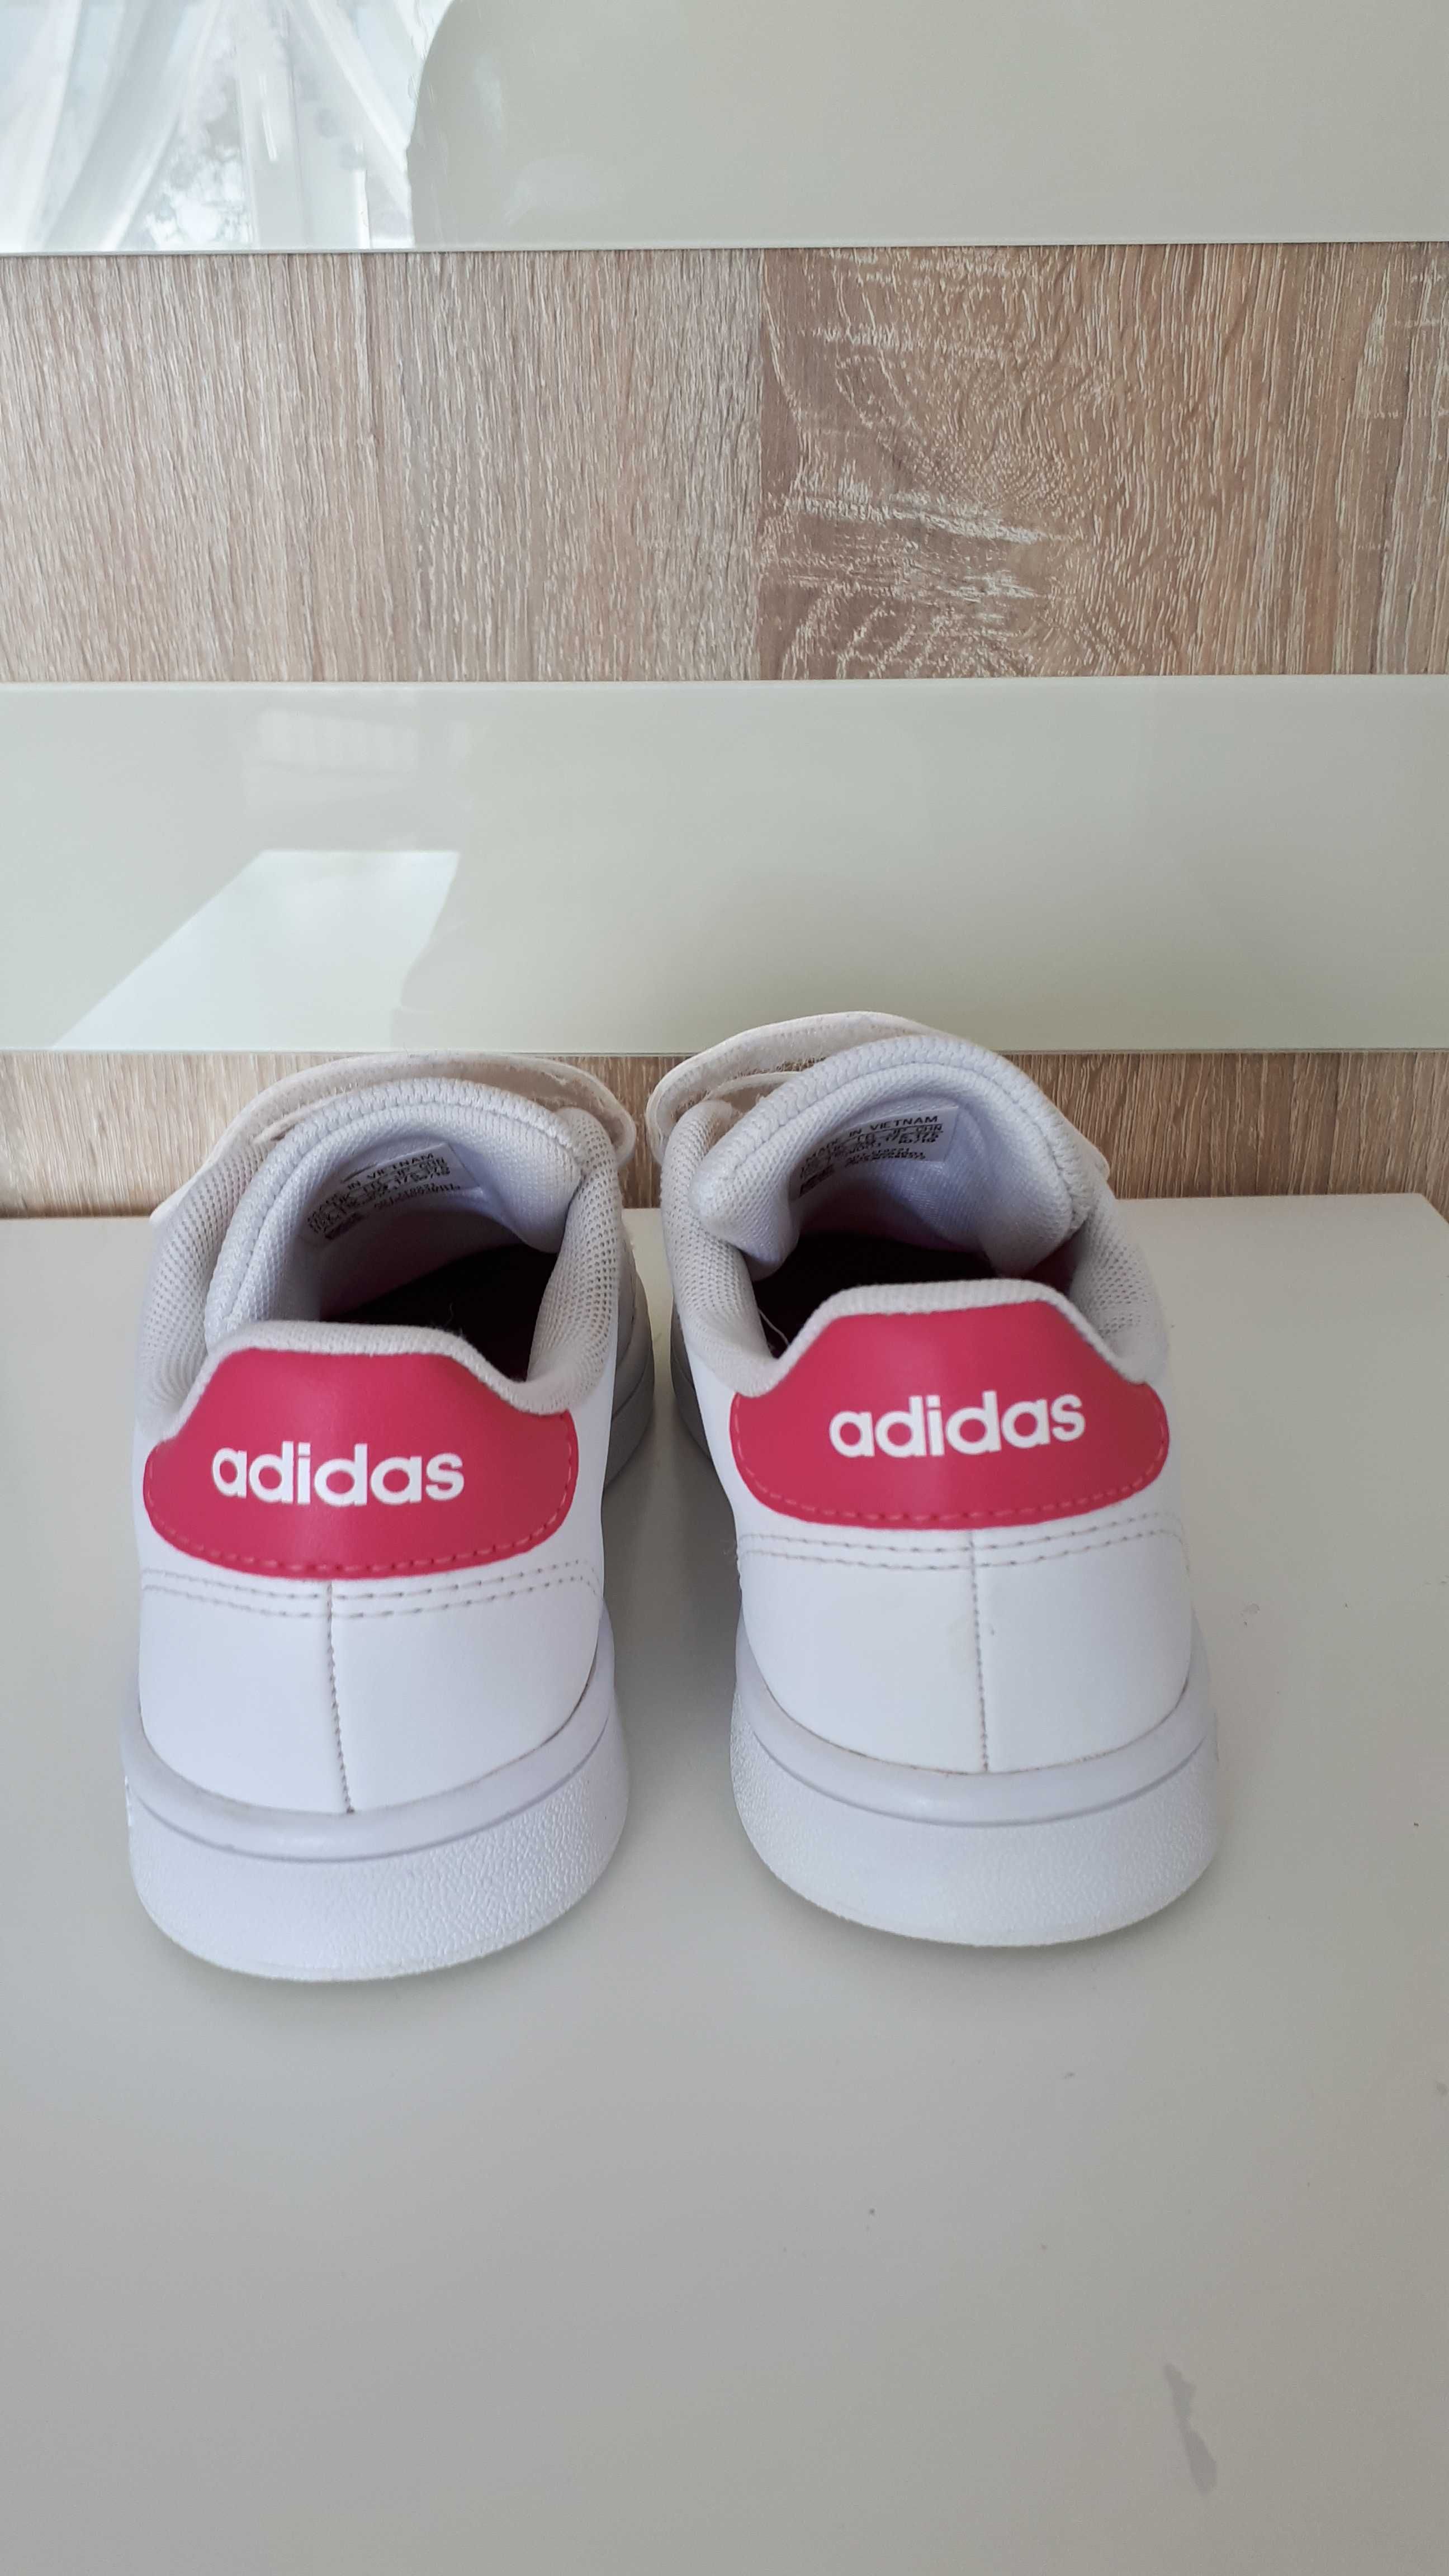 Adidas buty rozm 29 dziewczynka biale różowe j nowe